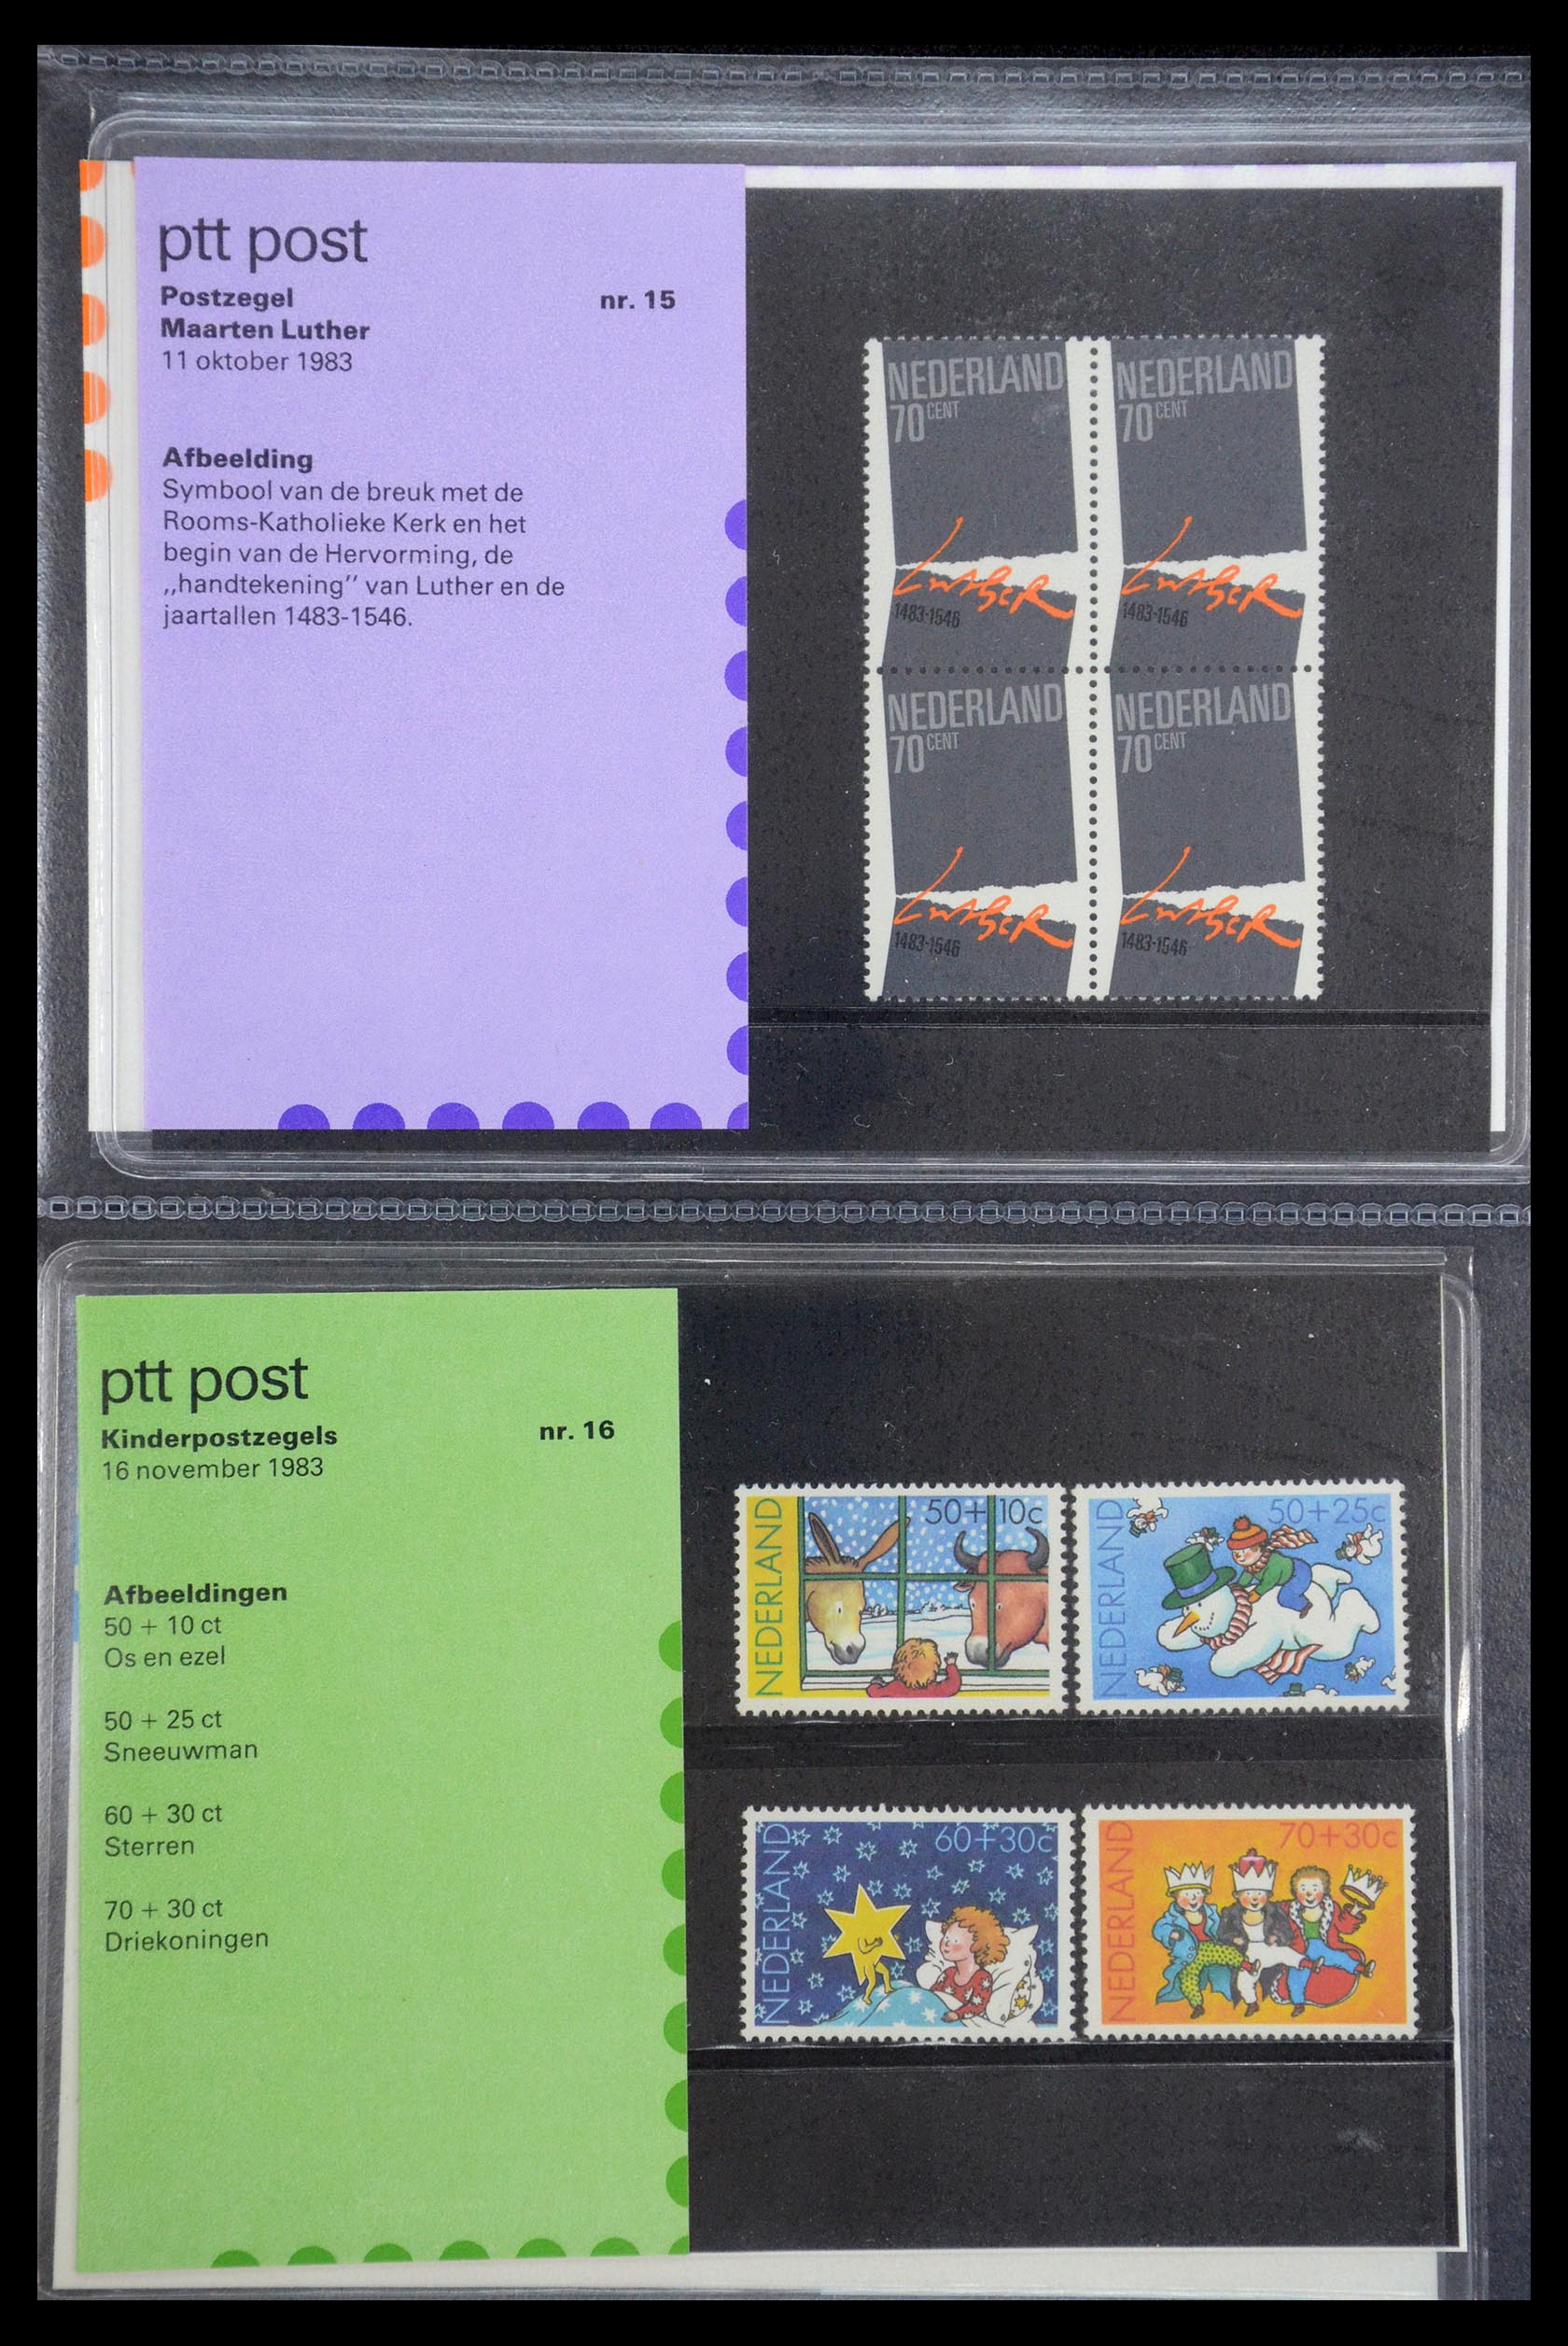 35187 008 - Stamp Collection 35187 Netherlands PTT presentation packs 1982-2019!